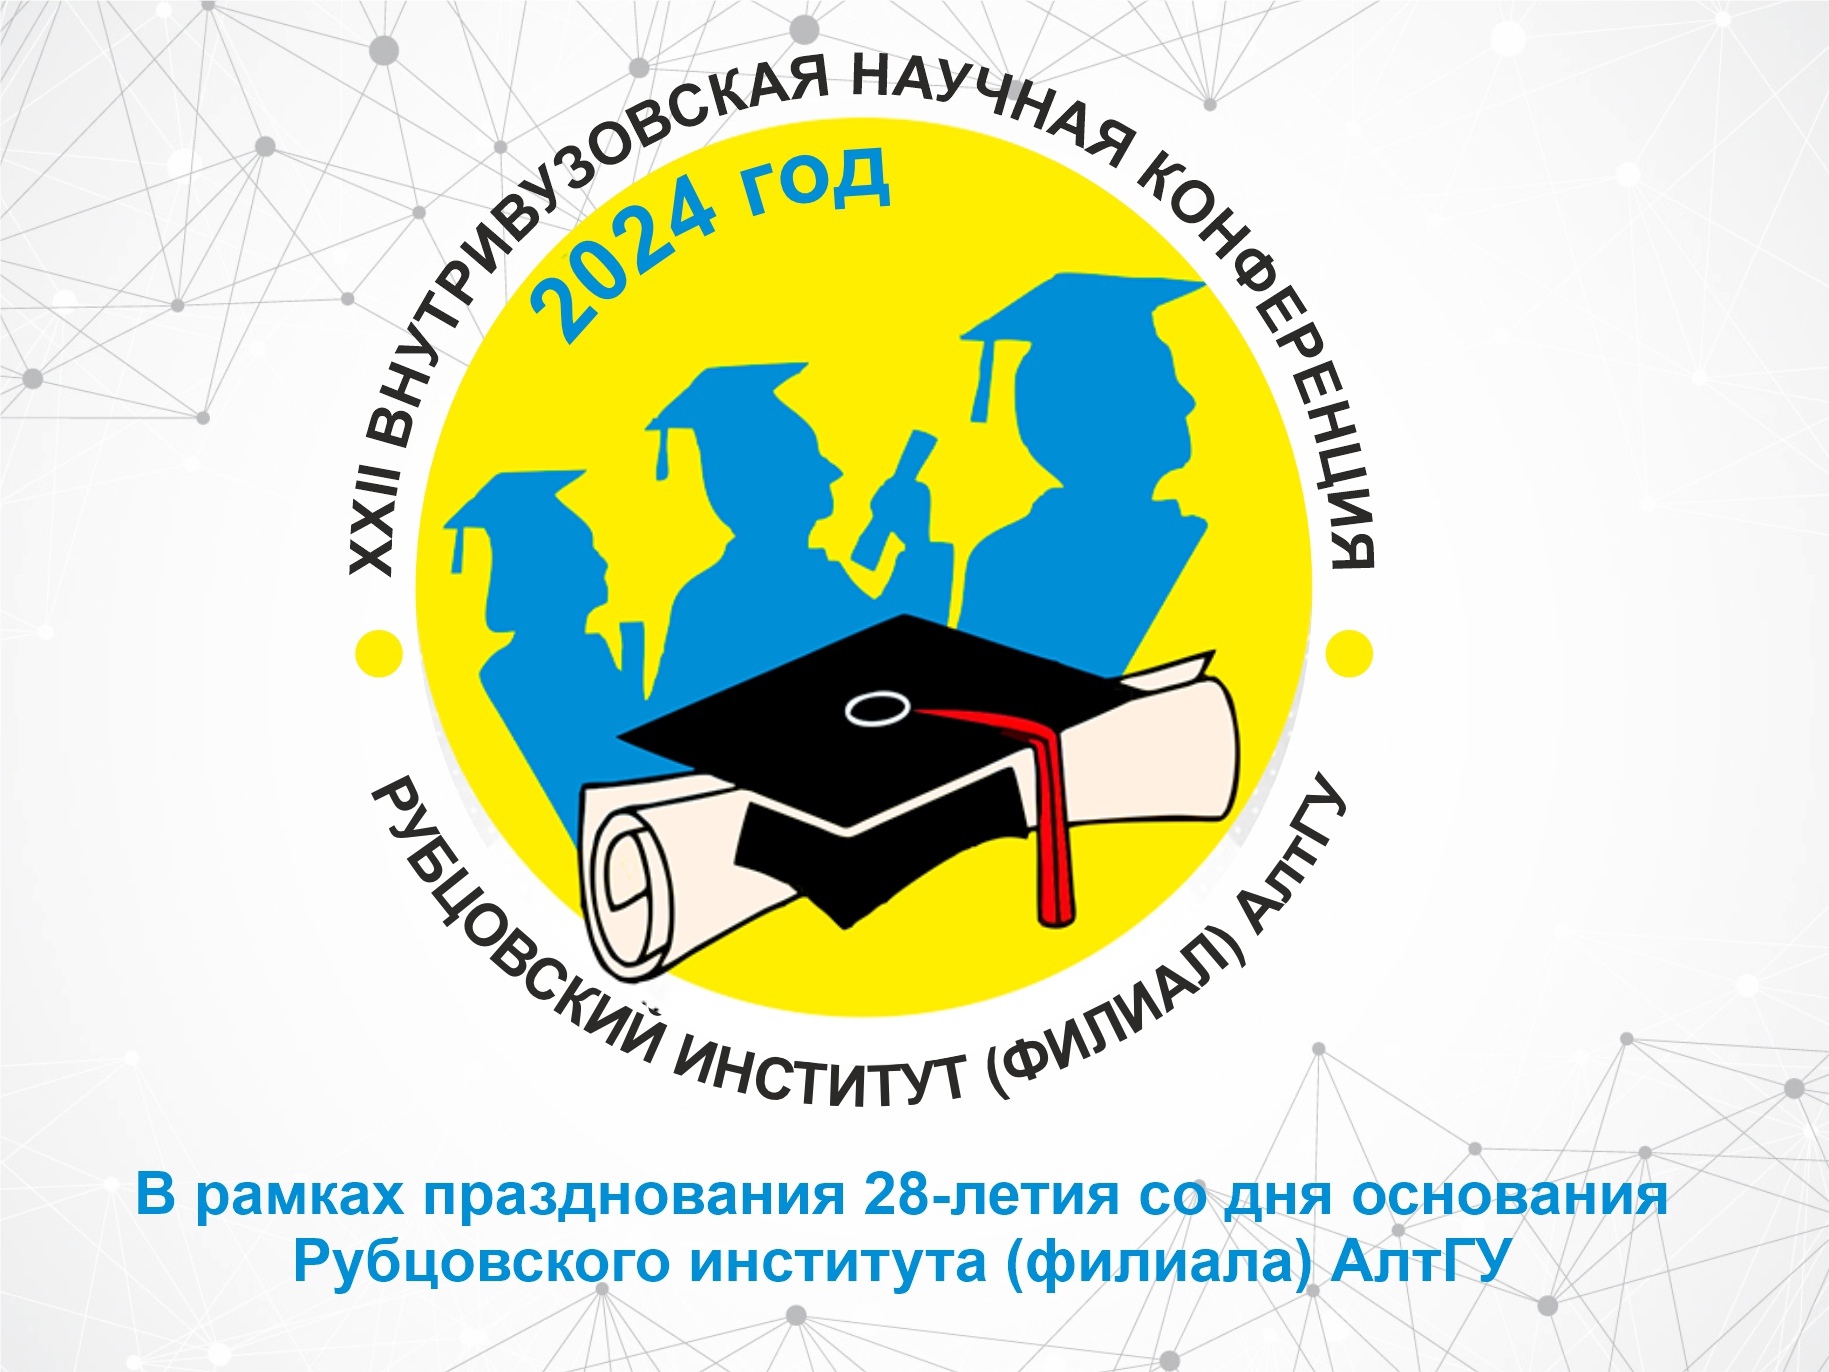 XXII внутривузовская научная конференция к 28-летию Рубцовского института (филиала) АлтГУ